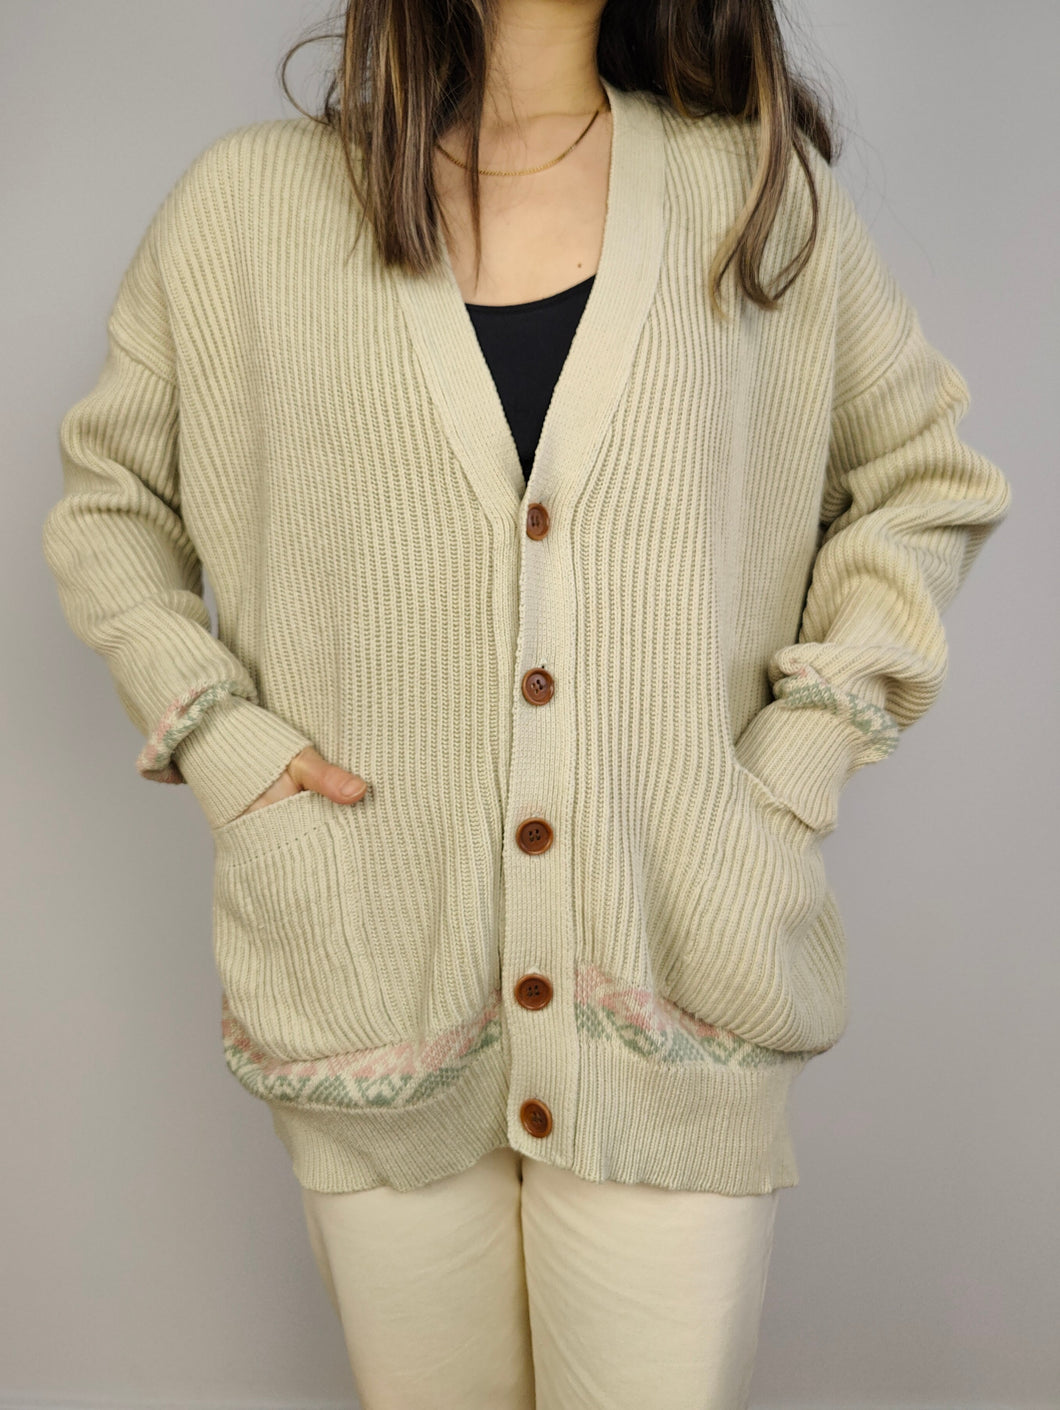 Der cremefarbene gerippte Cardigan aus Baumwolle | Vintage-Strickpulloverjacke aus weiß-beige-elfenbeinfarbenem Muster GB Pedrini L-XL